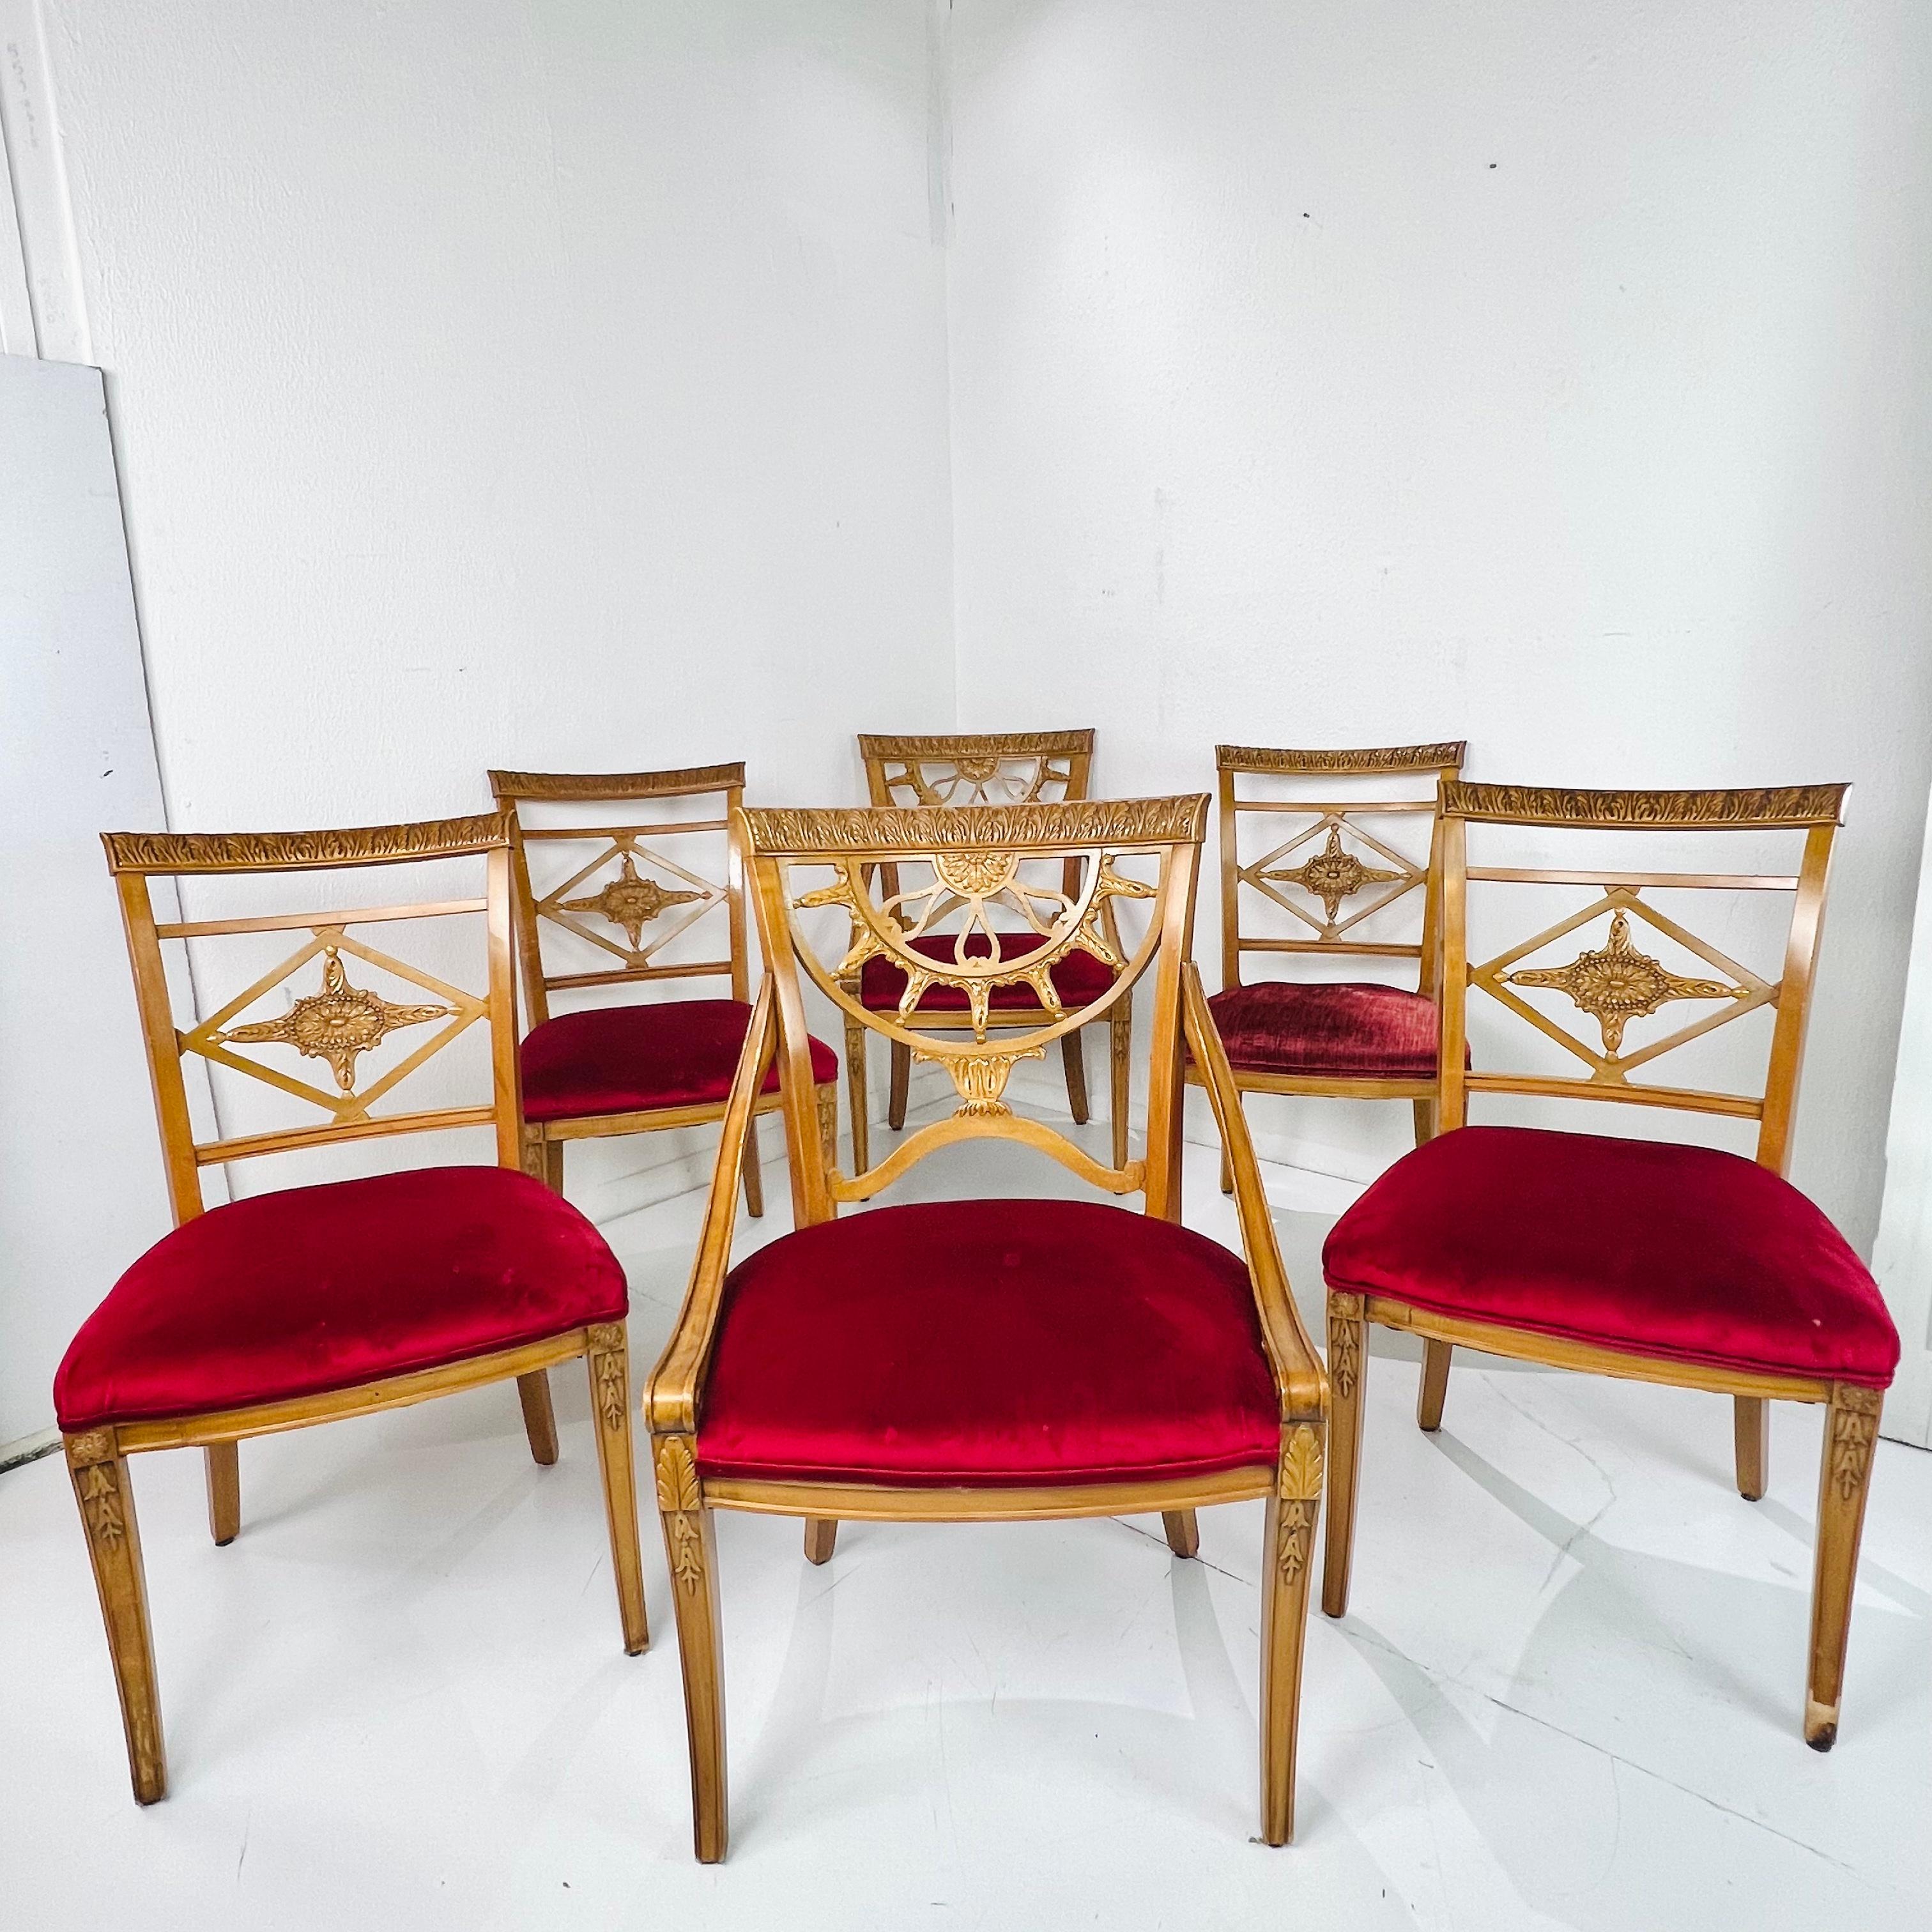 Ein klassischer Satz von sechs französischen neoklassizistischen Esszimmerstühlen aus dem späten 19. Jahrhundert, mit geschnitzter Sitzfläche, Rückenlehne und Armlehnen sowie kannelierten Beinen. Polsterung zeigt Verblassen, Flecken und Abnutzung -